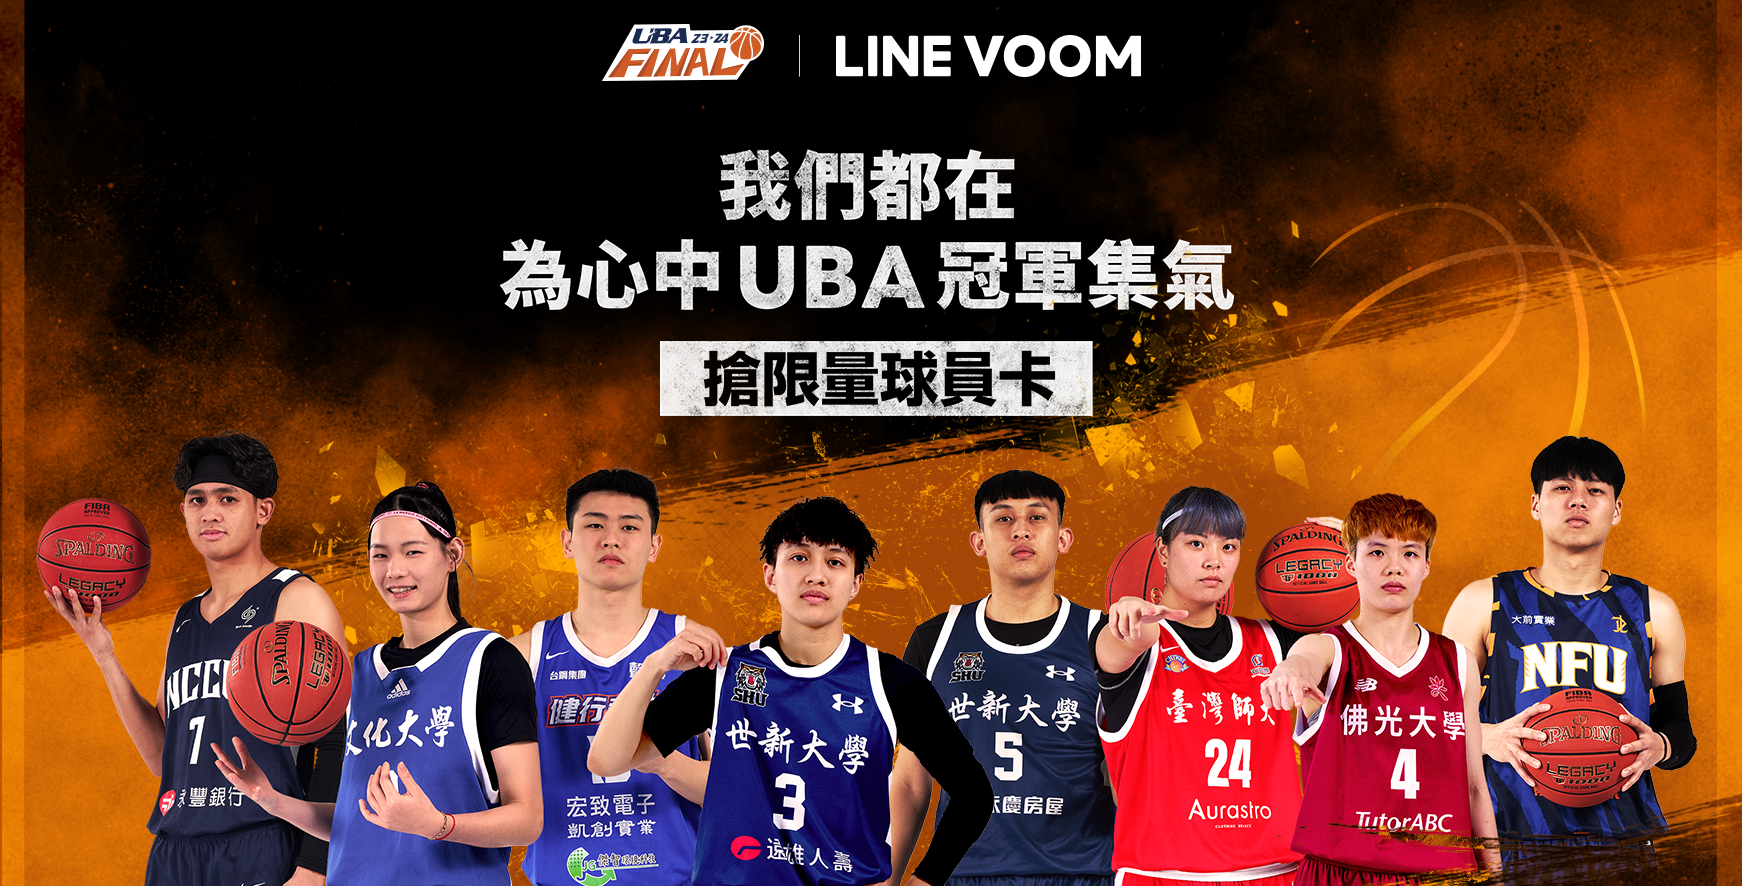 UBA攜手LINE VOOM推決賽集氣活動。圖由LINE VOOM提供